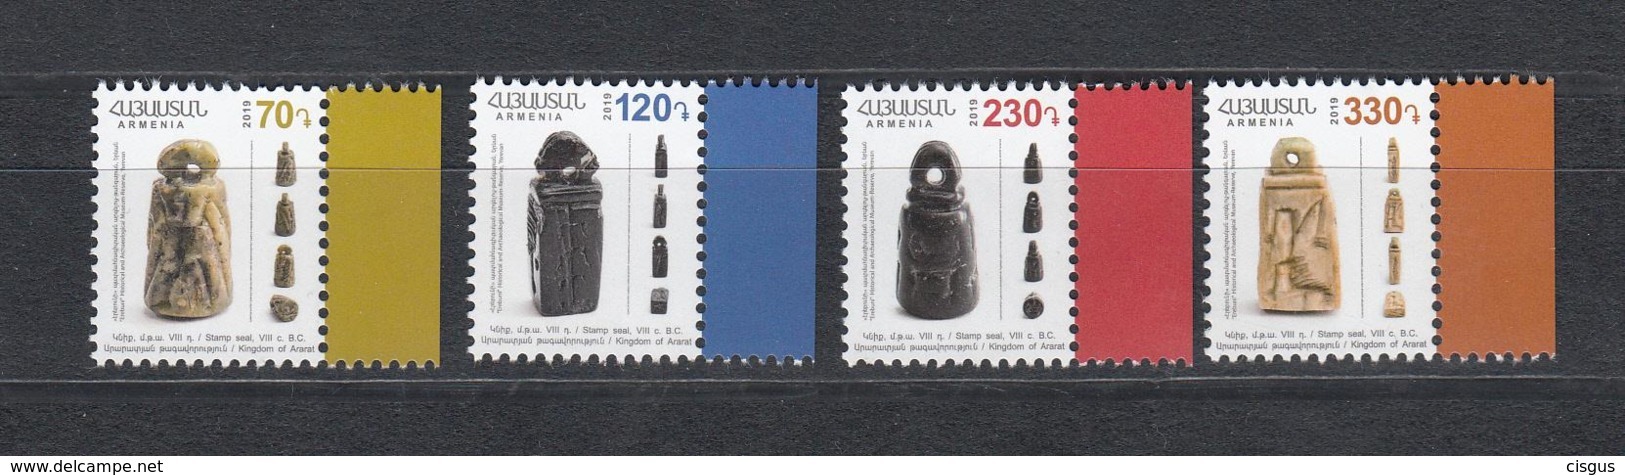 Armenia Armenien MNH** 2019 Seals Of Time Of Ararat Kingdom Definitve Mi 1105-8 - Armenia